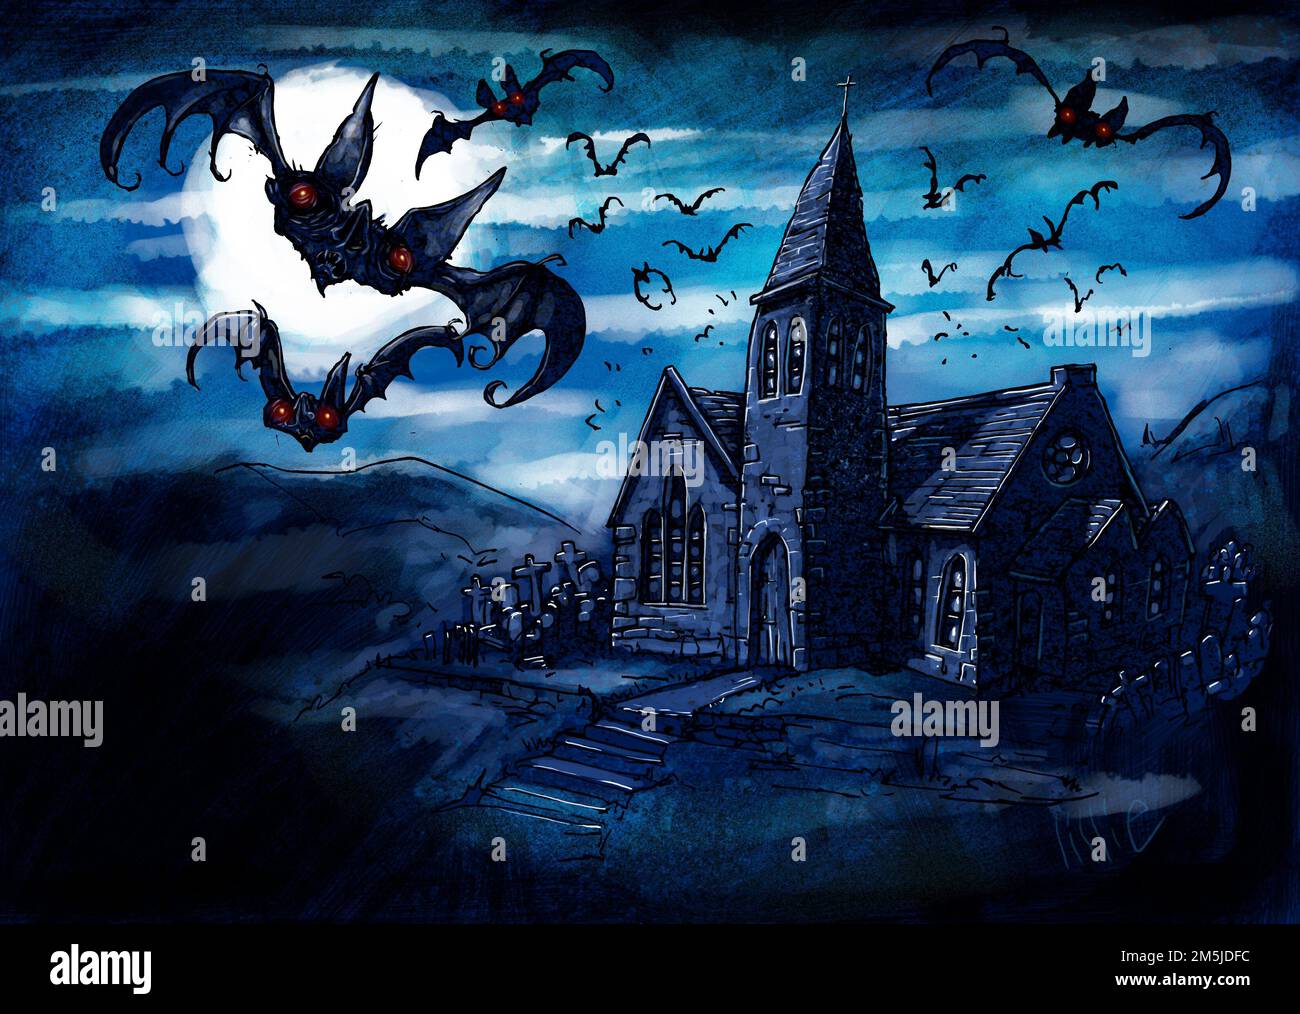 Ilustración de arte de murciélagos volando sobre una casa espeluznante, espeluznante, abandonada durante la luna llena, se adaptaría al horror, ilustración de libro gótico, arte editorial Foto de stock